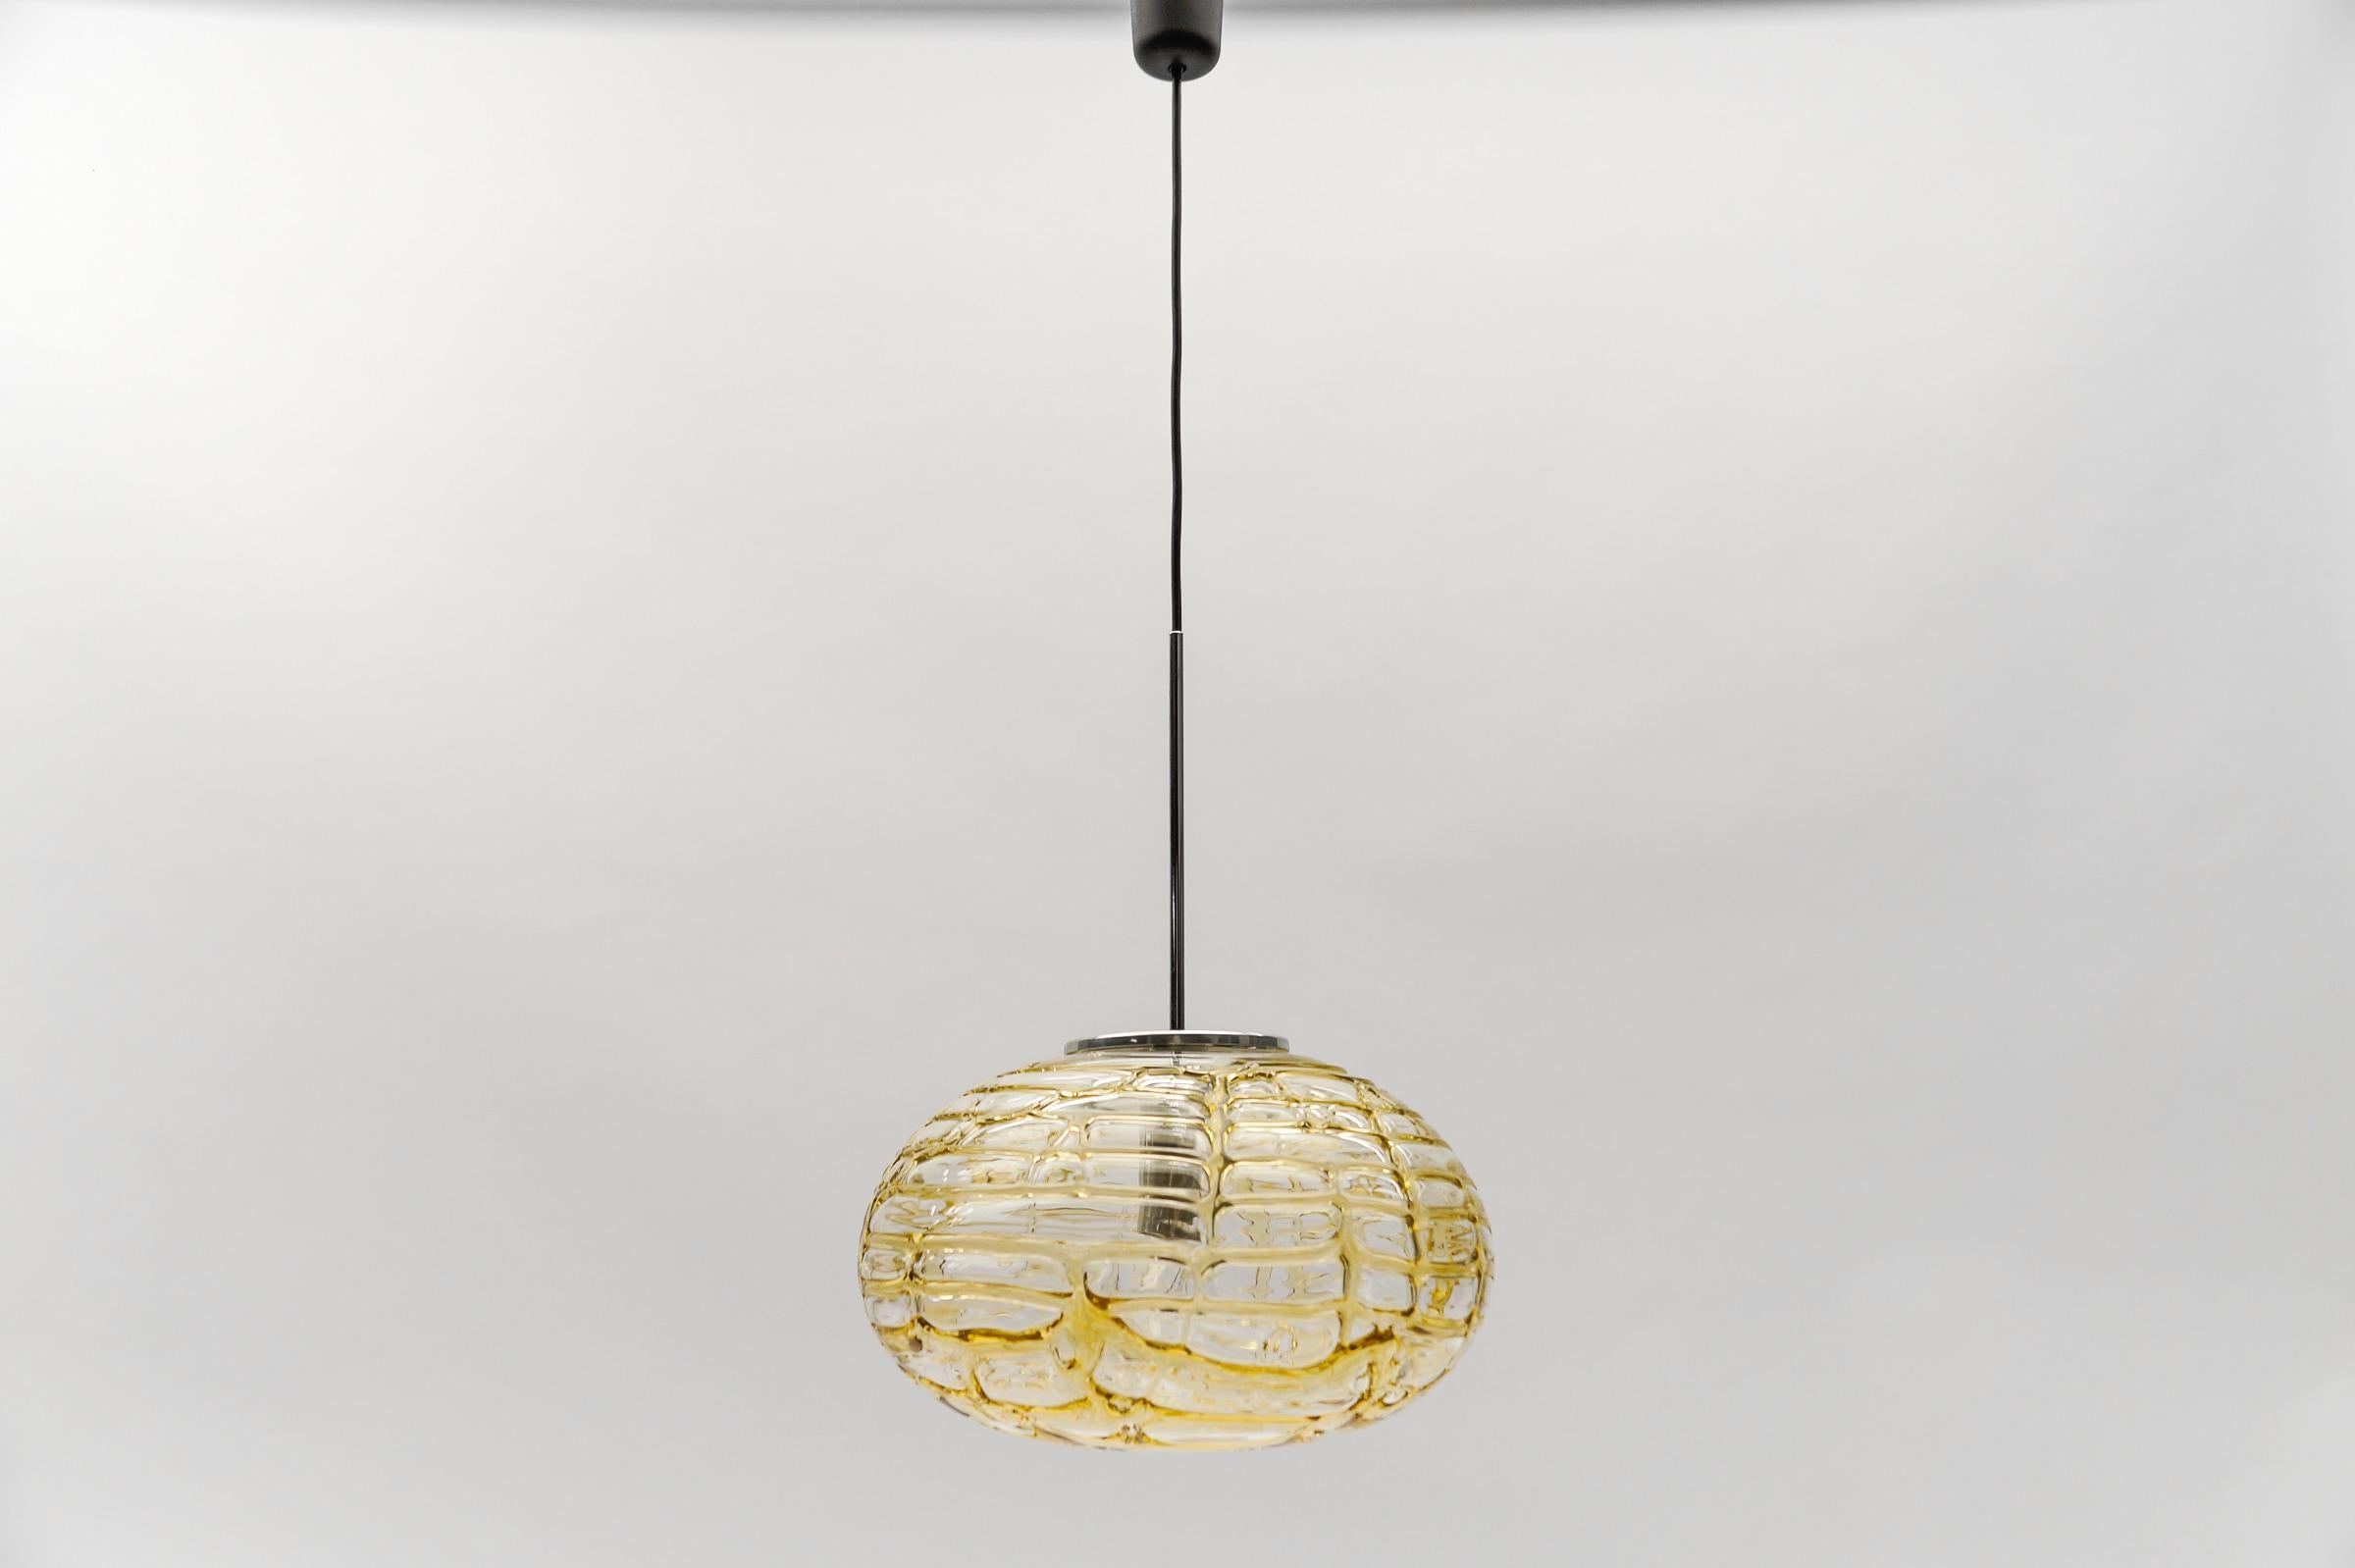 Gelbe ovale Murano Glas Kugel Pendelleuchte von Doria, 1960er Jahre Deutschland

Abmessungen
Durchmesser: 38 cm (14,96 Zoll)
Höhe: 95 cm (37.40 in.)

Eine E27-Fassung. Funktioniert mit 220V und 110V.

Unsere Lampen werden geprüft, gereinigt und sind